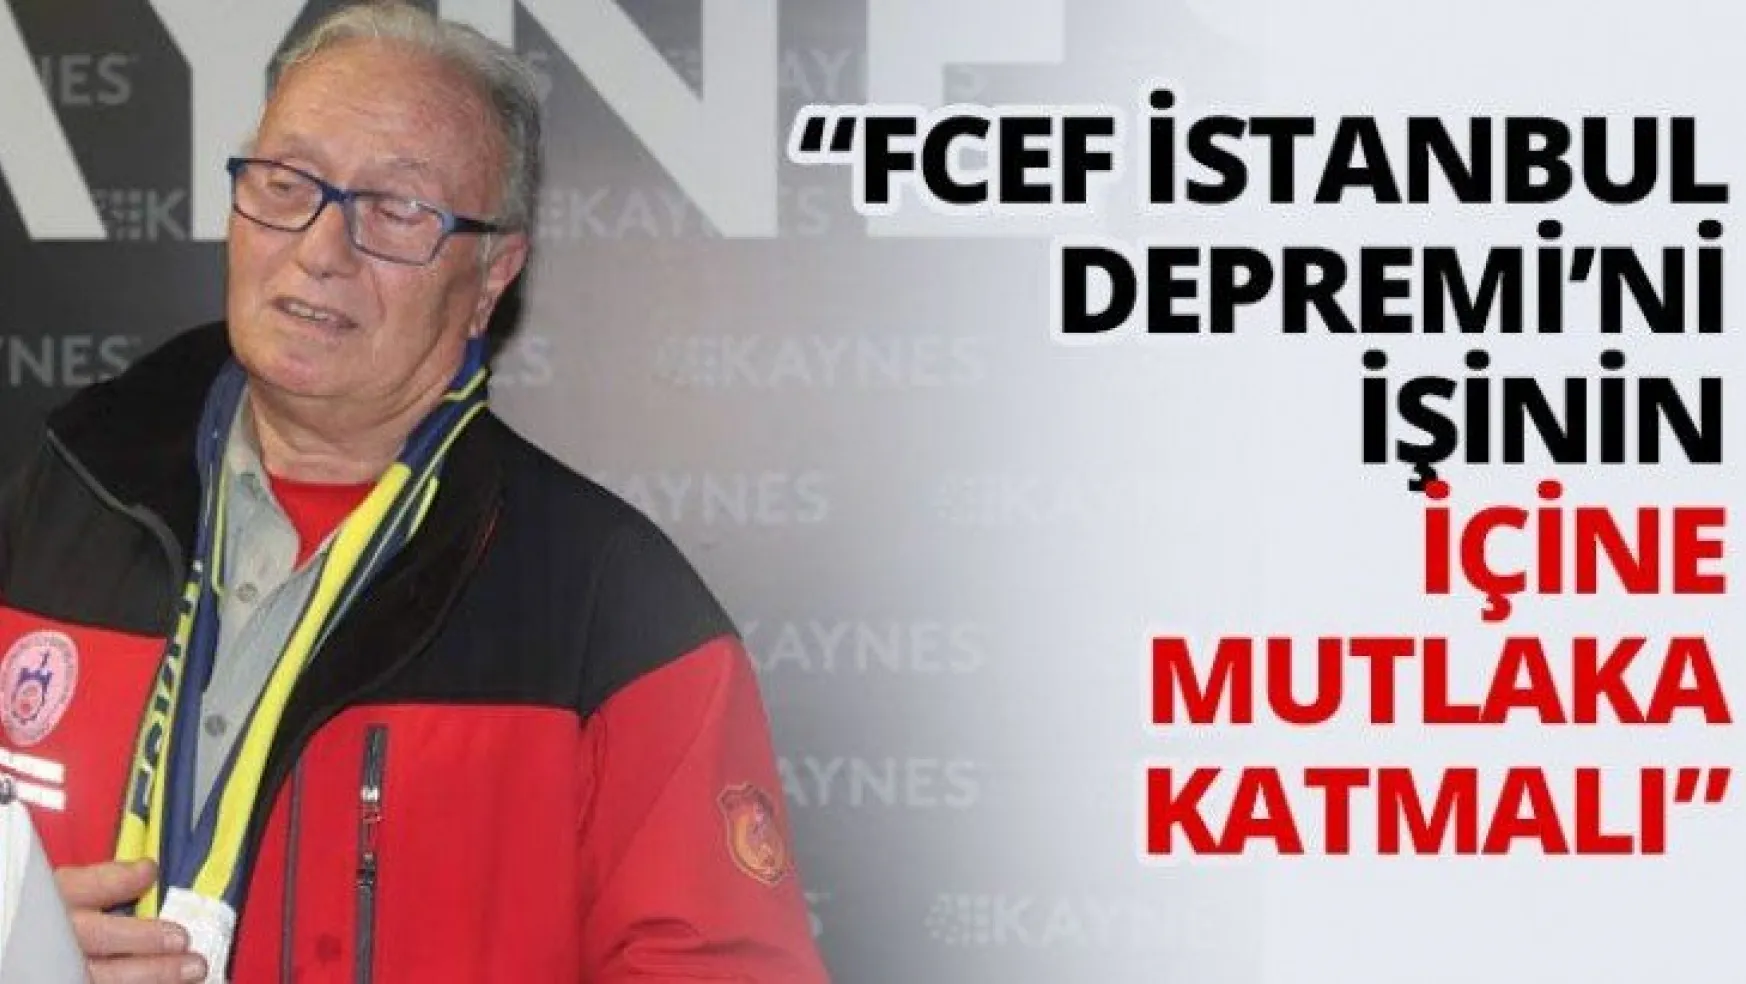 'FCEF İstanbul Depremi'ni işinin içine mutlaka katmalı'